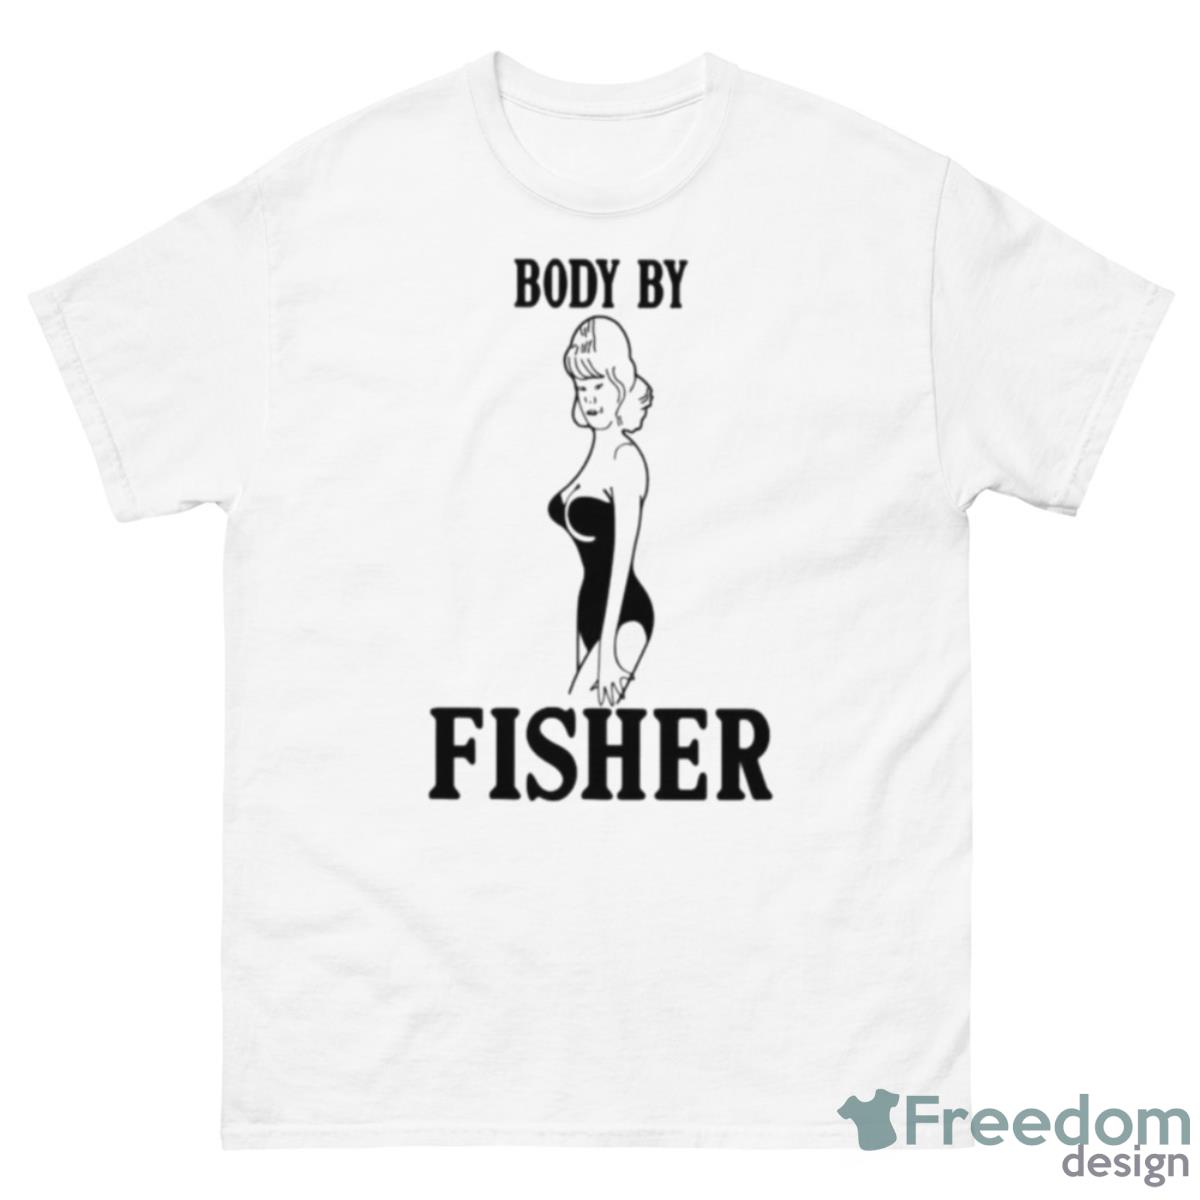 Body By Fisher Shirt - 500 Men’s Classic Tee Gildan